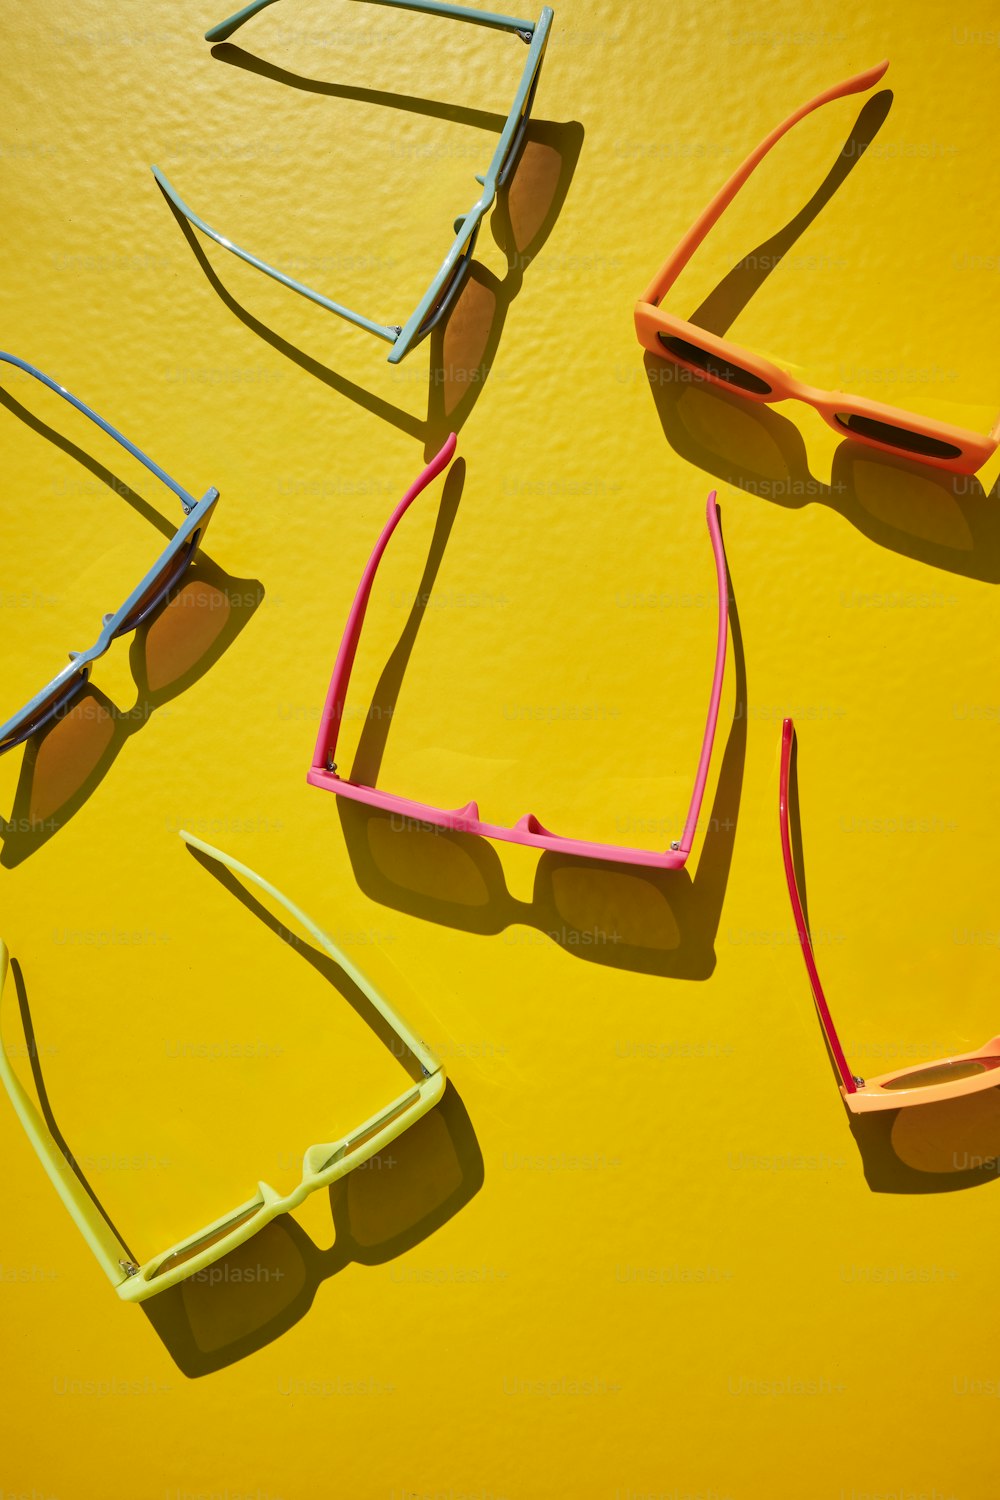 quatro pares de óculos de sol sentados em cima de uma superfície amarela